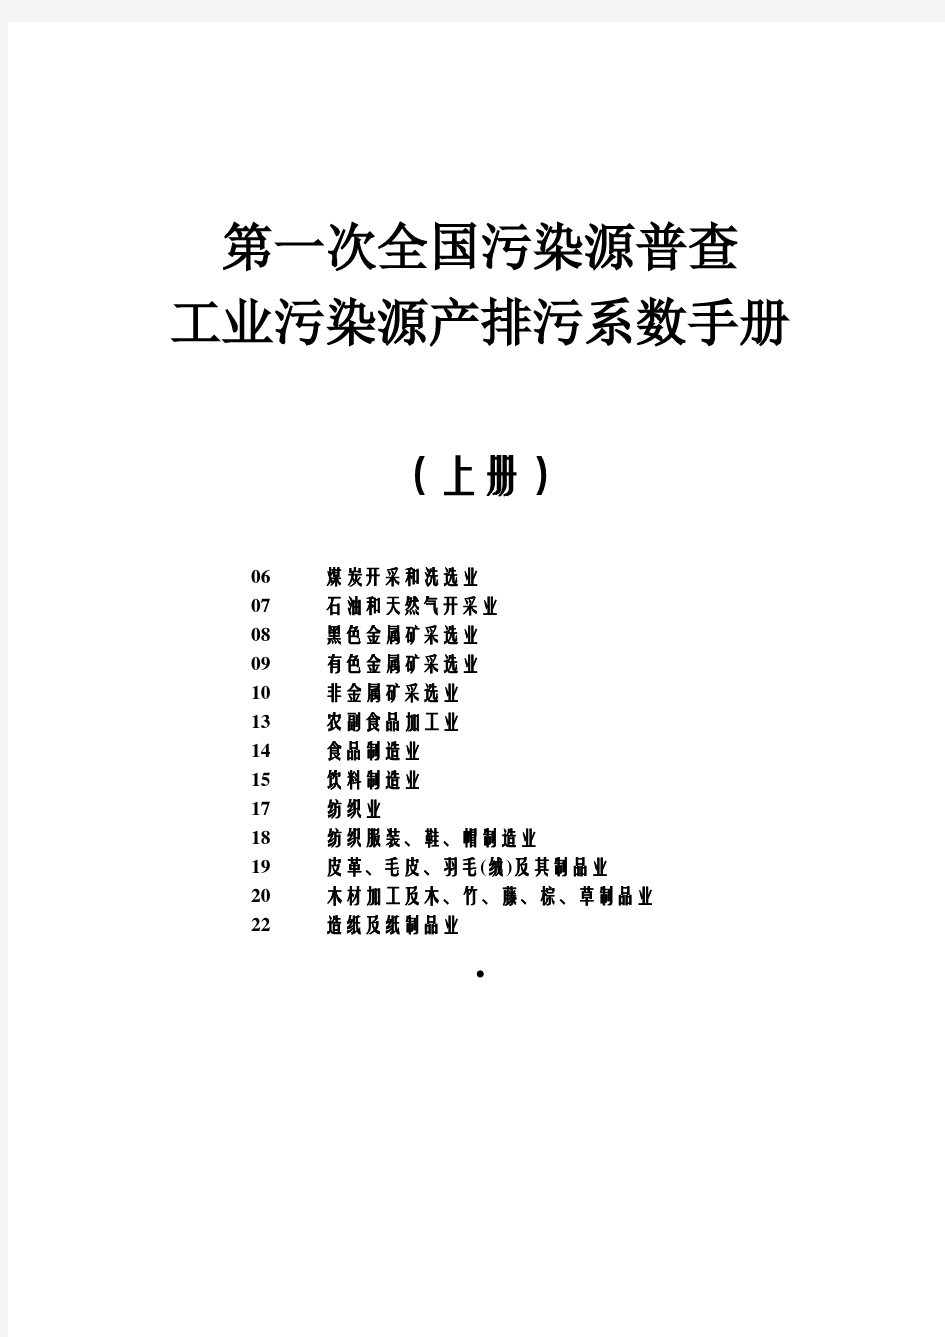 工业源产排污系数手册(2010修订)上册